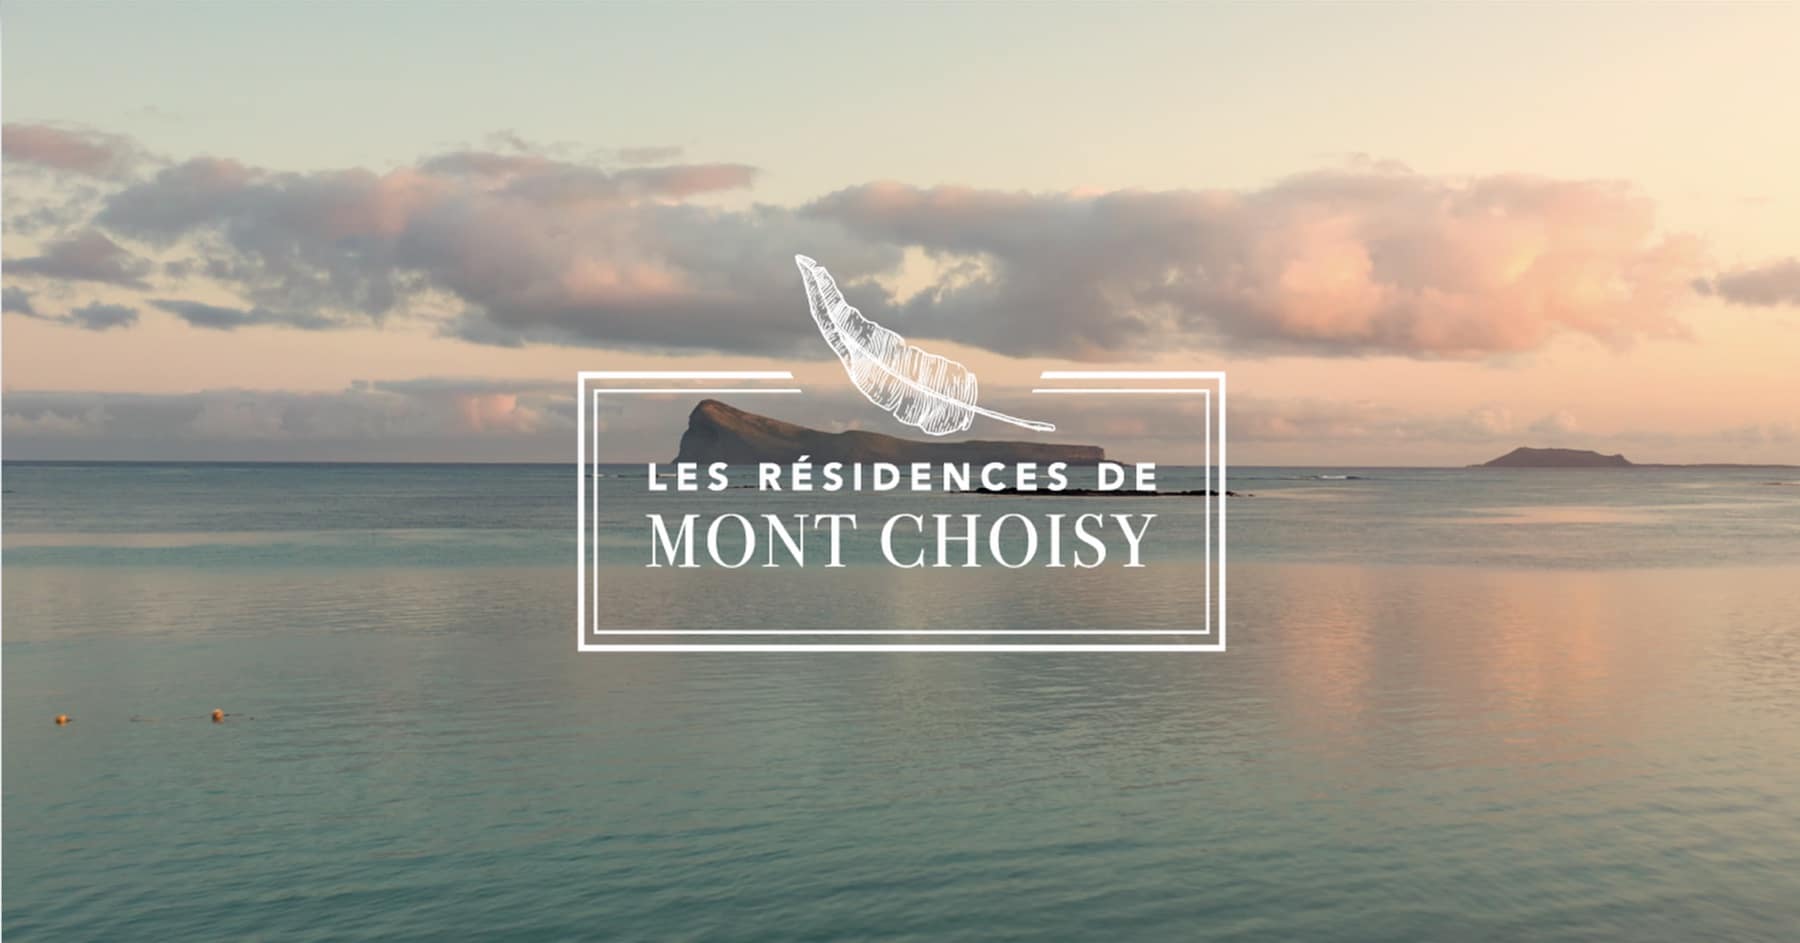 Les Residences de Mont Choisy video